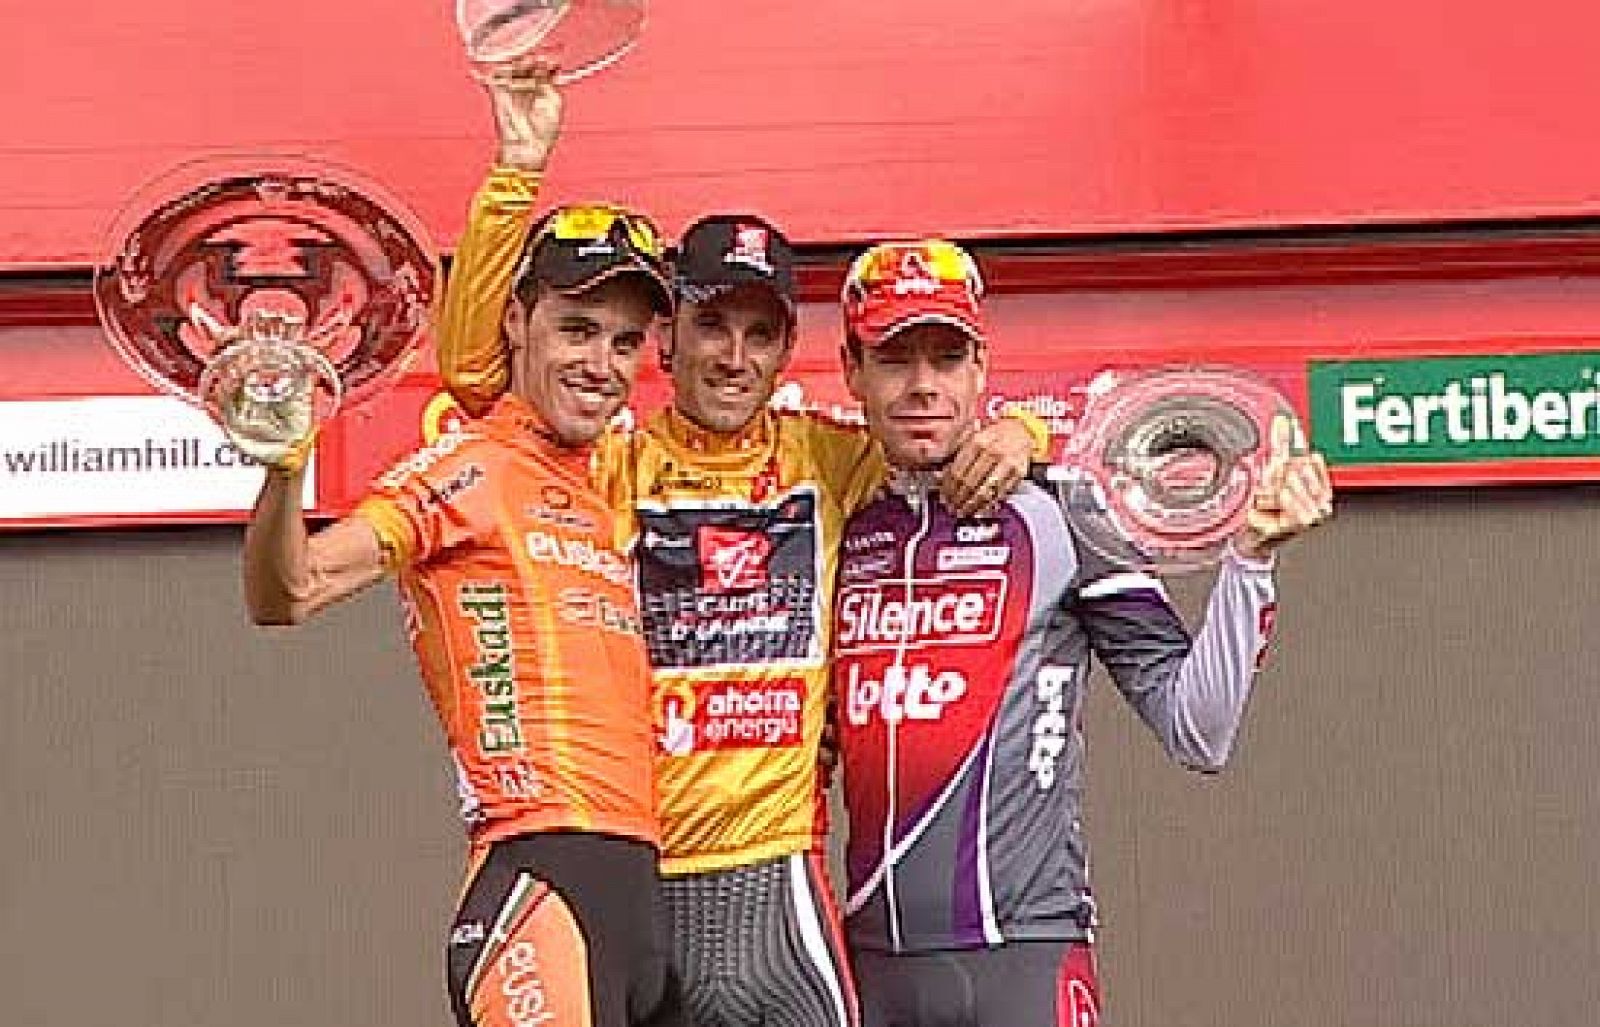 Los tres componentes del podio de la Vuelta a España: Valverde, Samuel Sánchez y Evans, escuchan el himno de España en honor al ganador, el murciano Alejandro Valverde